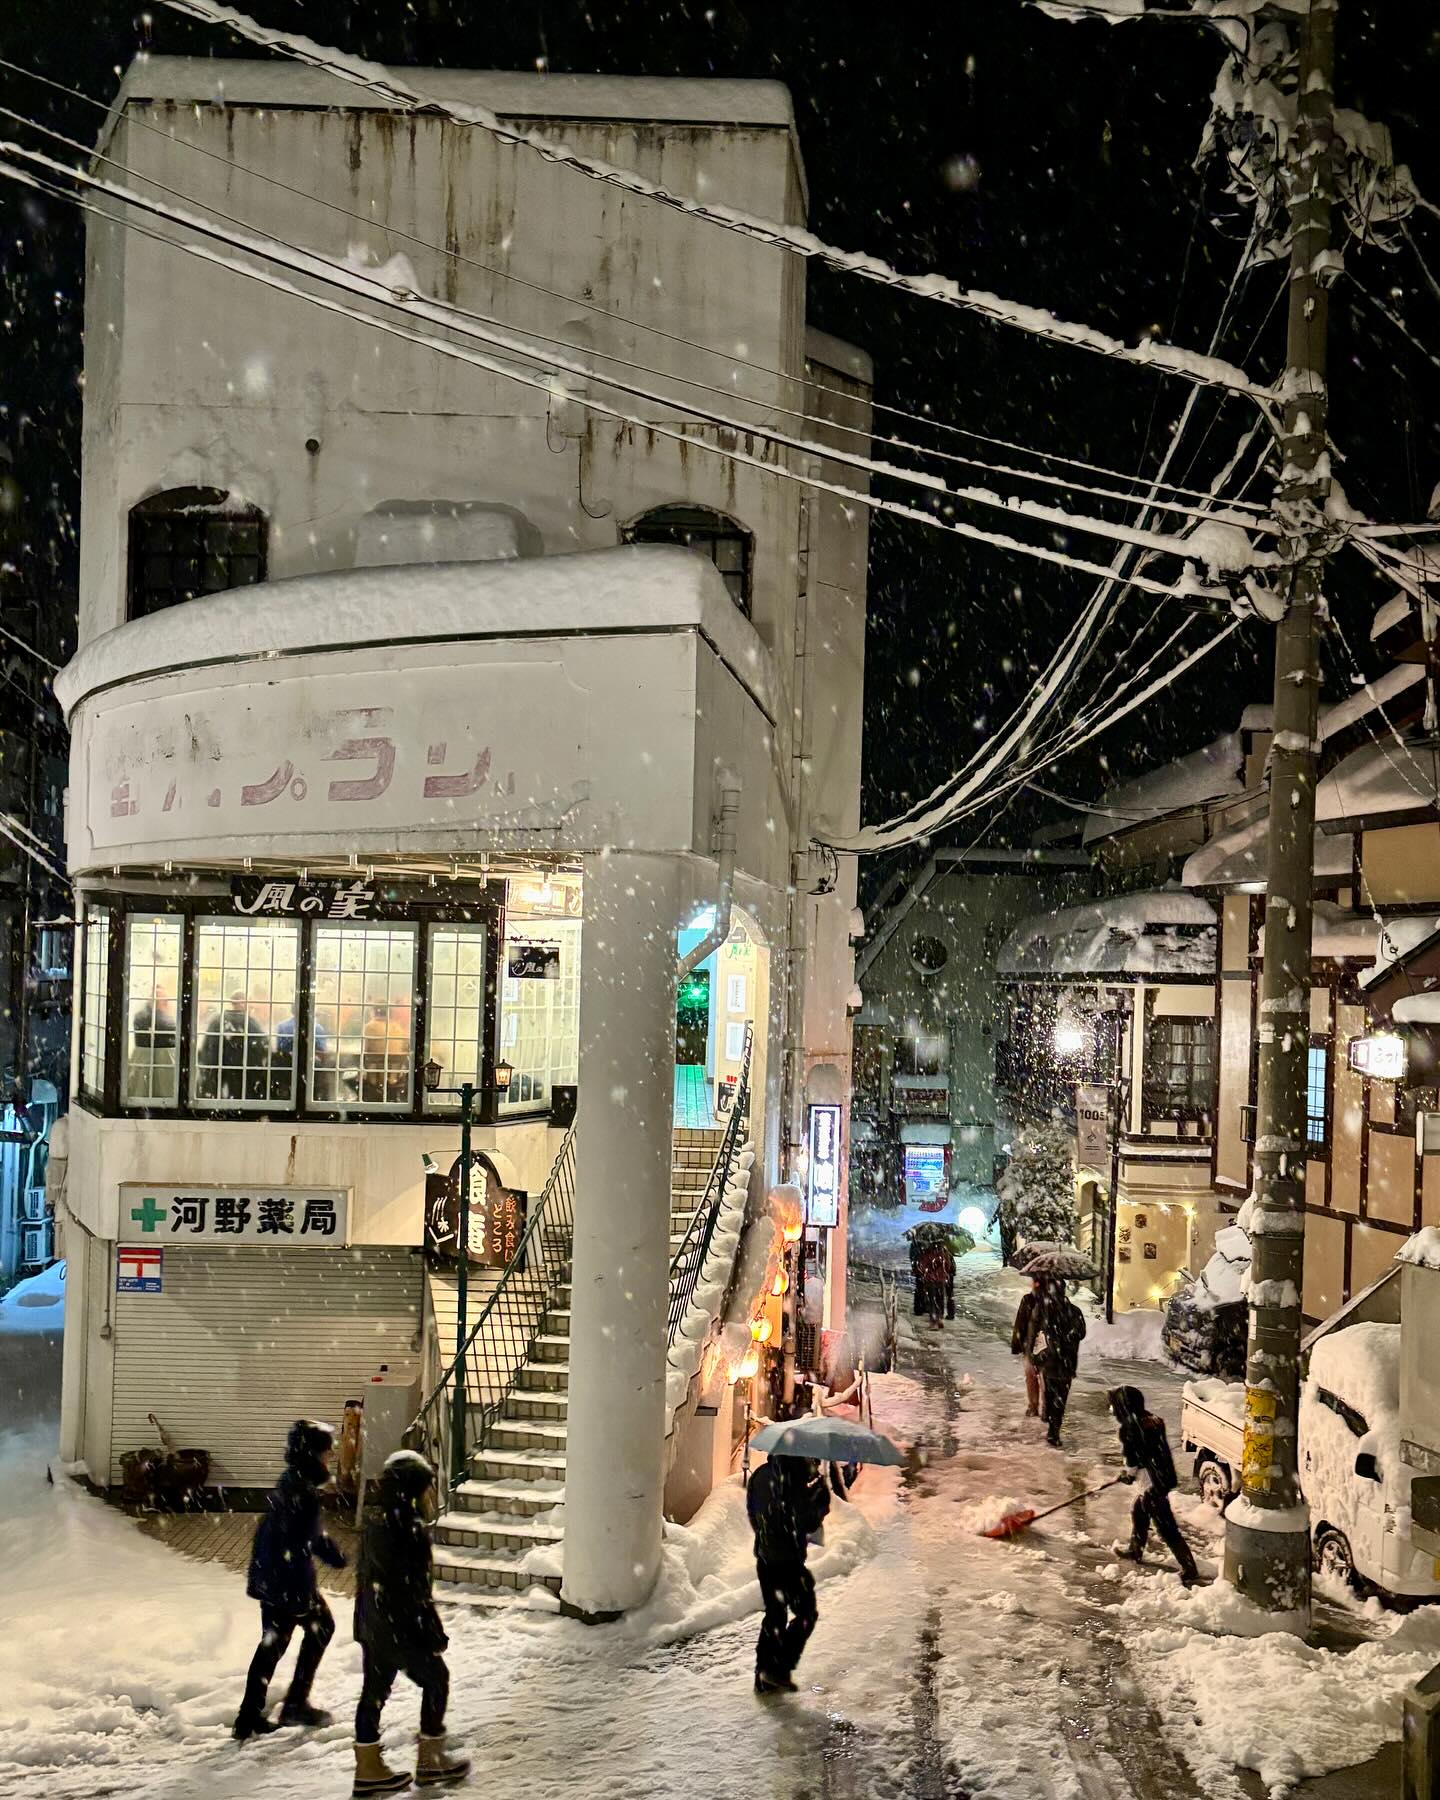 Tokyo Nozawa Snow Fall